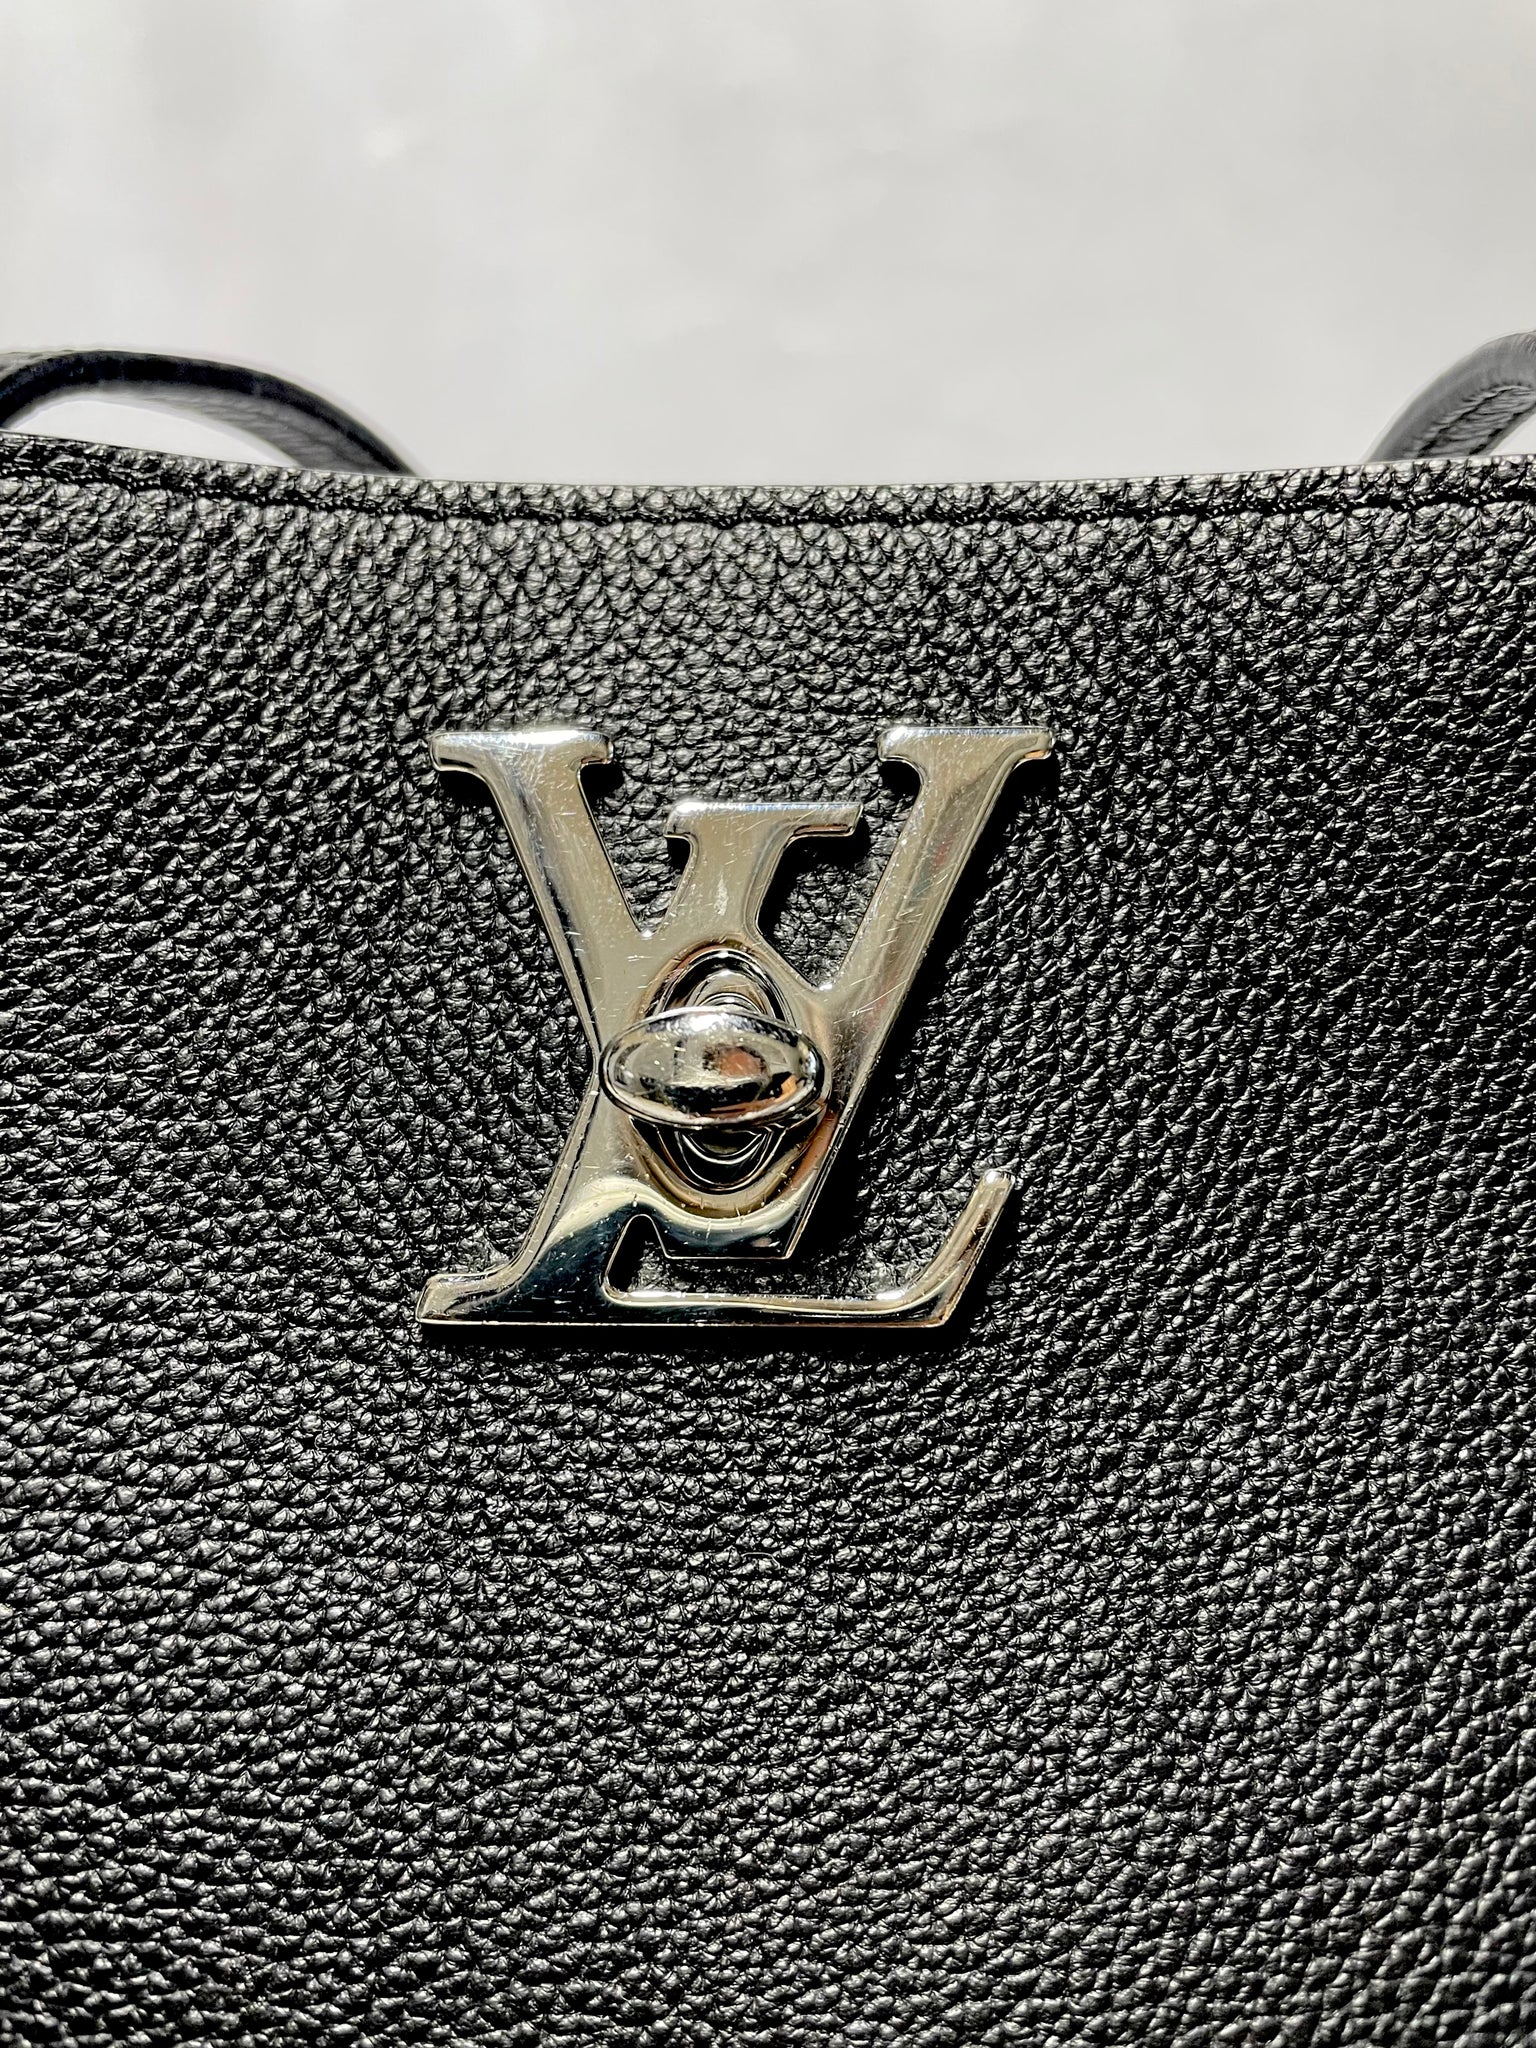 Louis Vuitton, Bags, Authentic 2895 Louis Vuitton Lockme Cabas Tote  Vanille Noir Leather Handbag